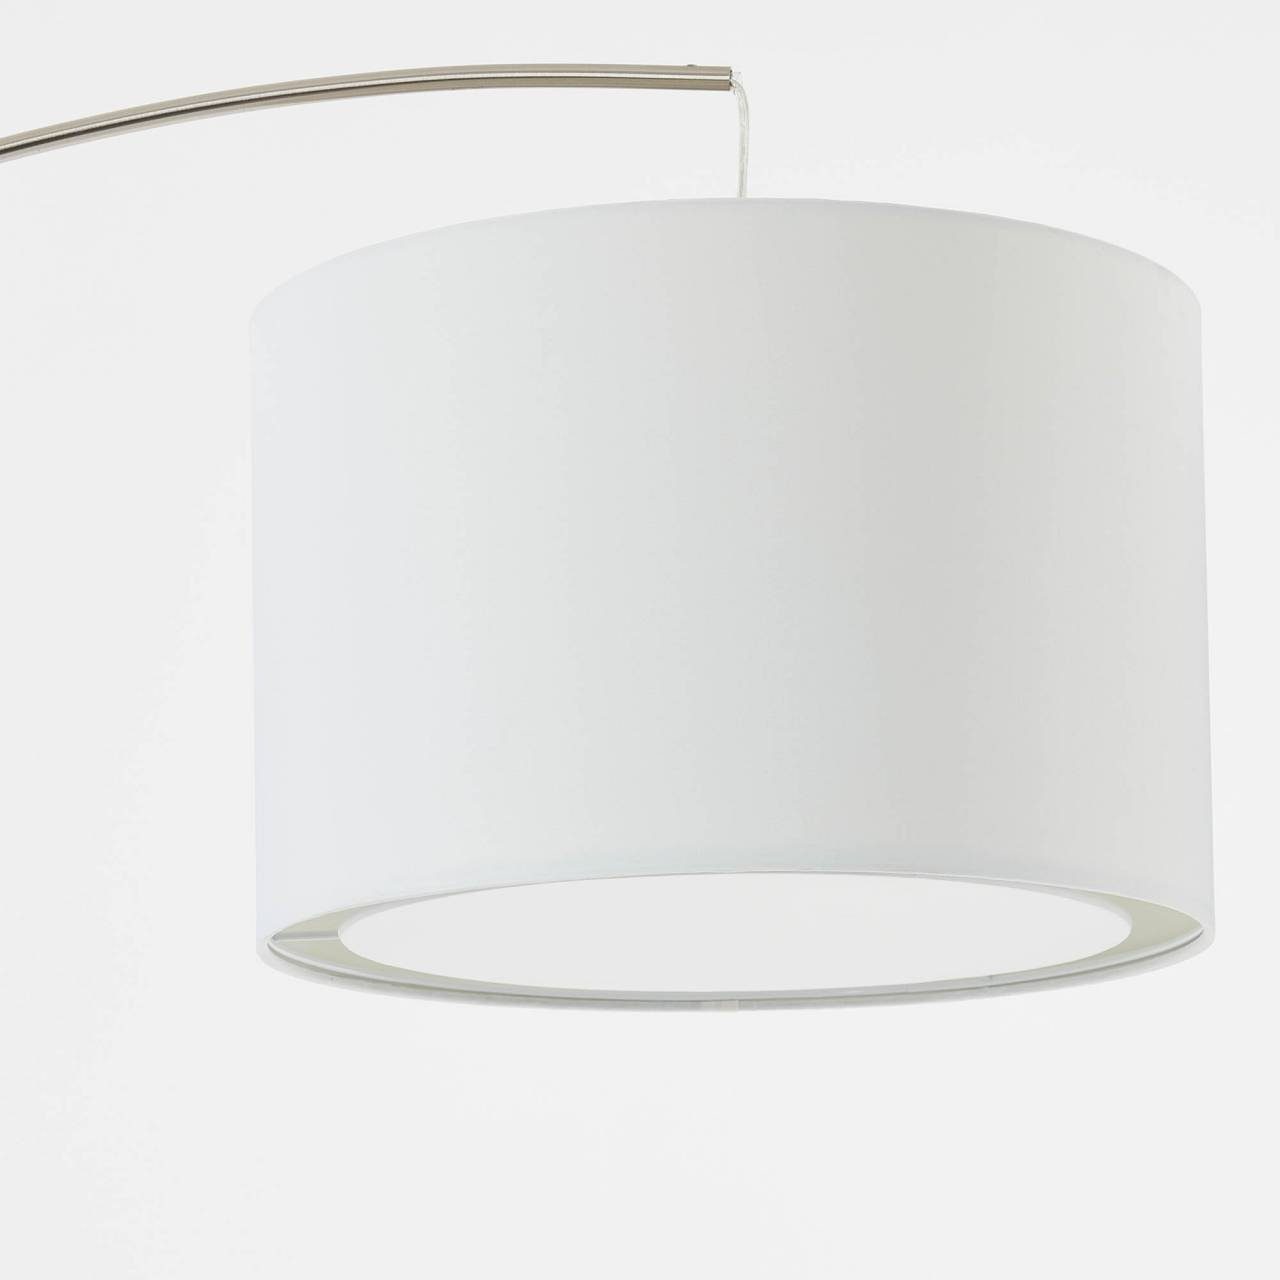 Lampe gee eisen/weiß 60W, Clarie, 1x Bogenstandleuchte E27, A60, Brilliant 1,8m Stehlampe Clarie